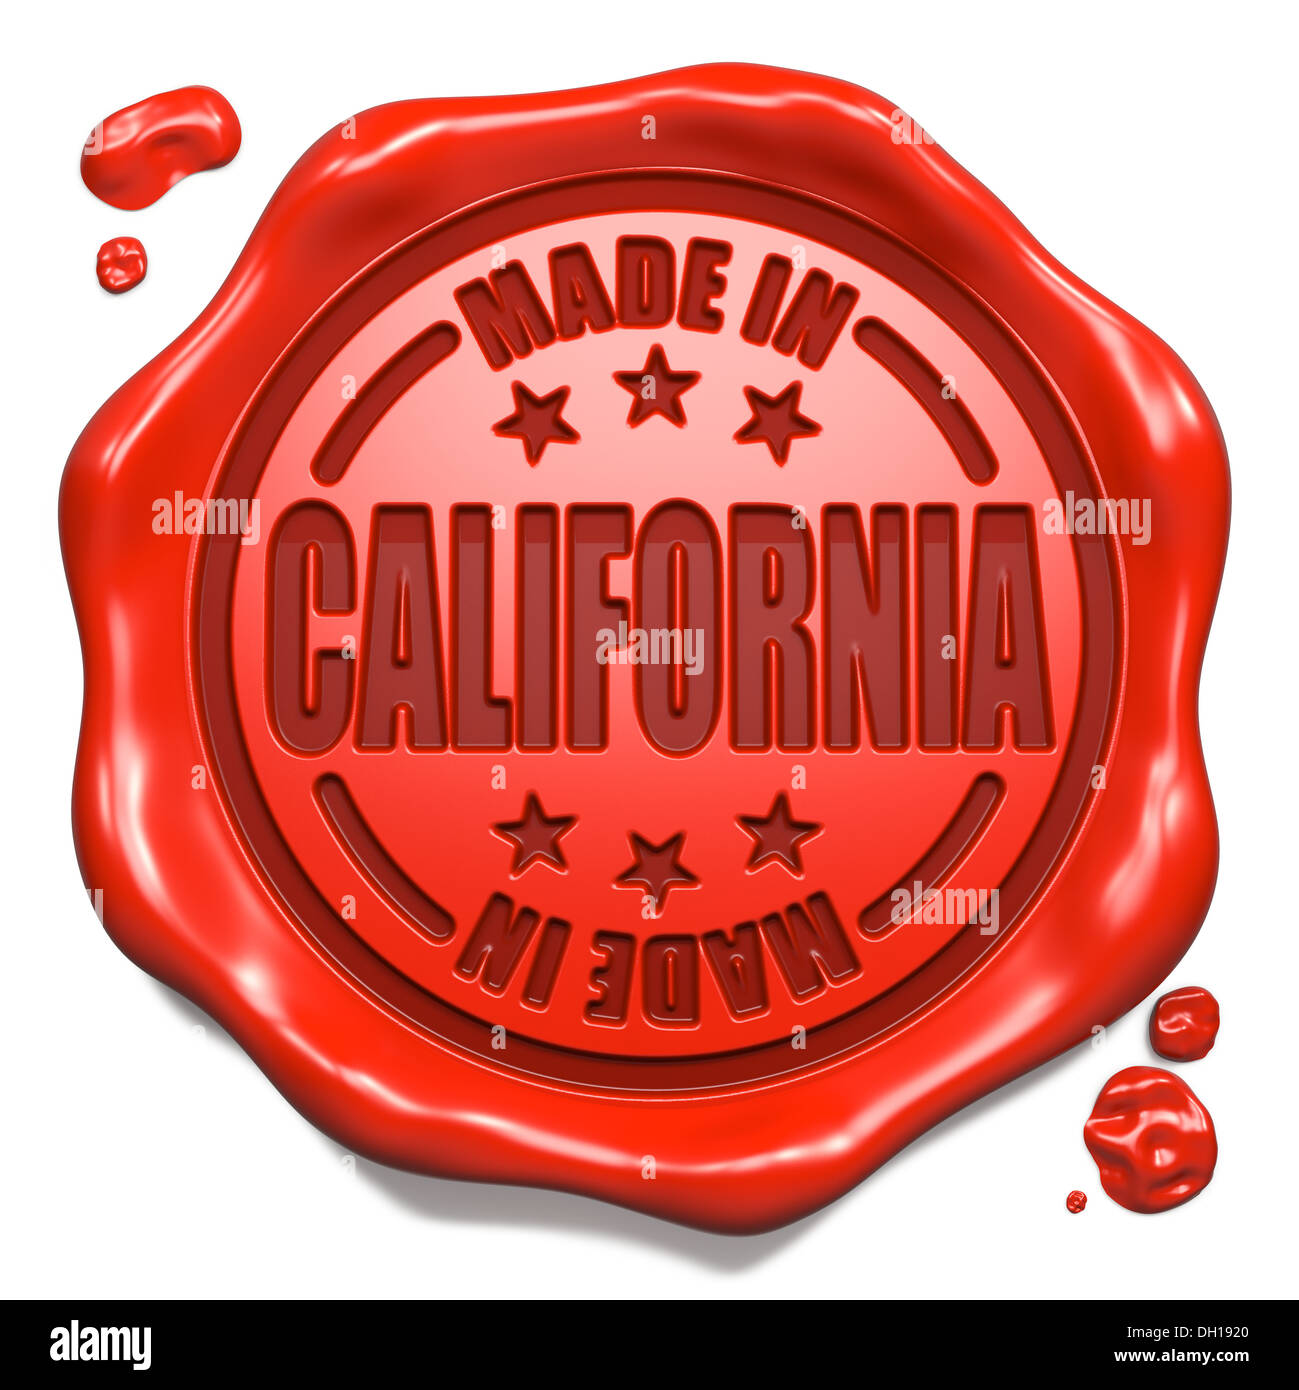 Machte in Kalifornien - Stempel auf Siegel aus rotem Wachs. Stockfoto